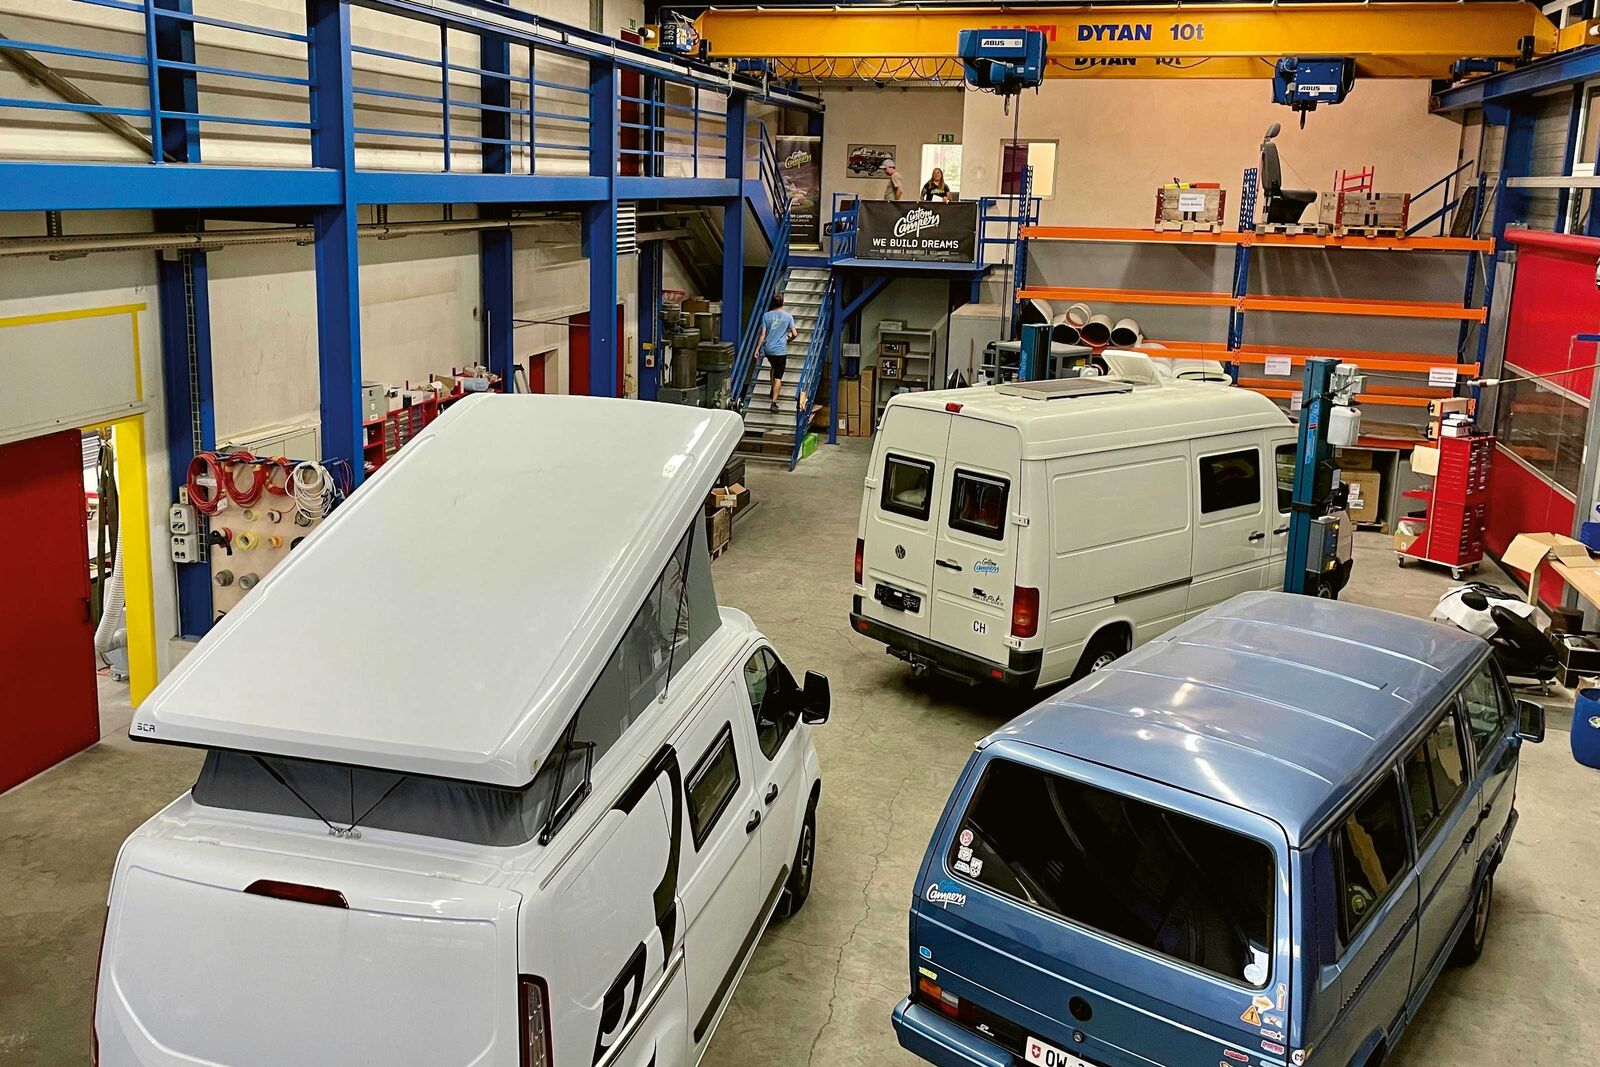 Après des semaines de déménagement intensif, l'entreprise Custom Campers GmbH est arrivée et installée sur son nouveau site à Döttingen.